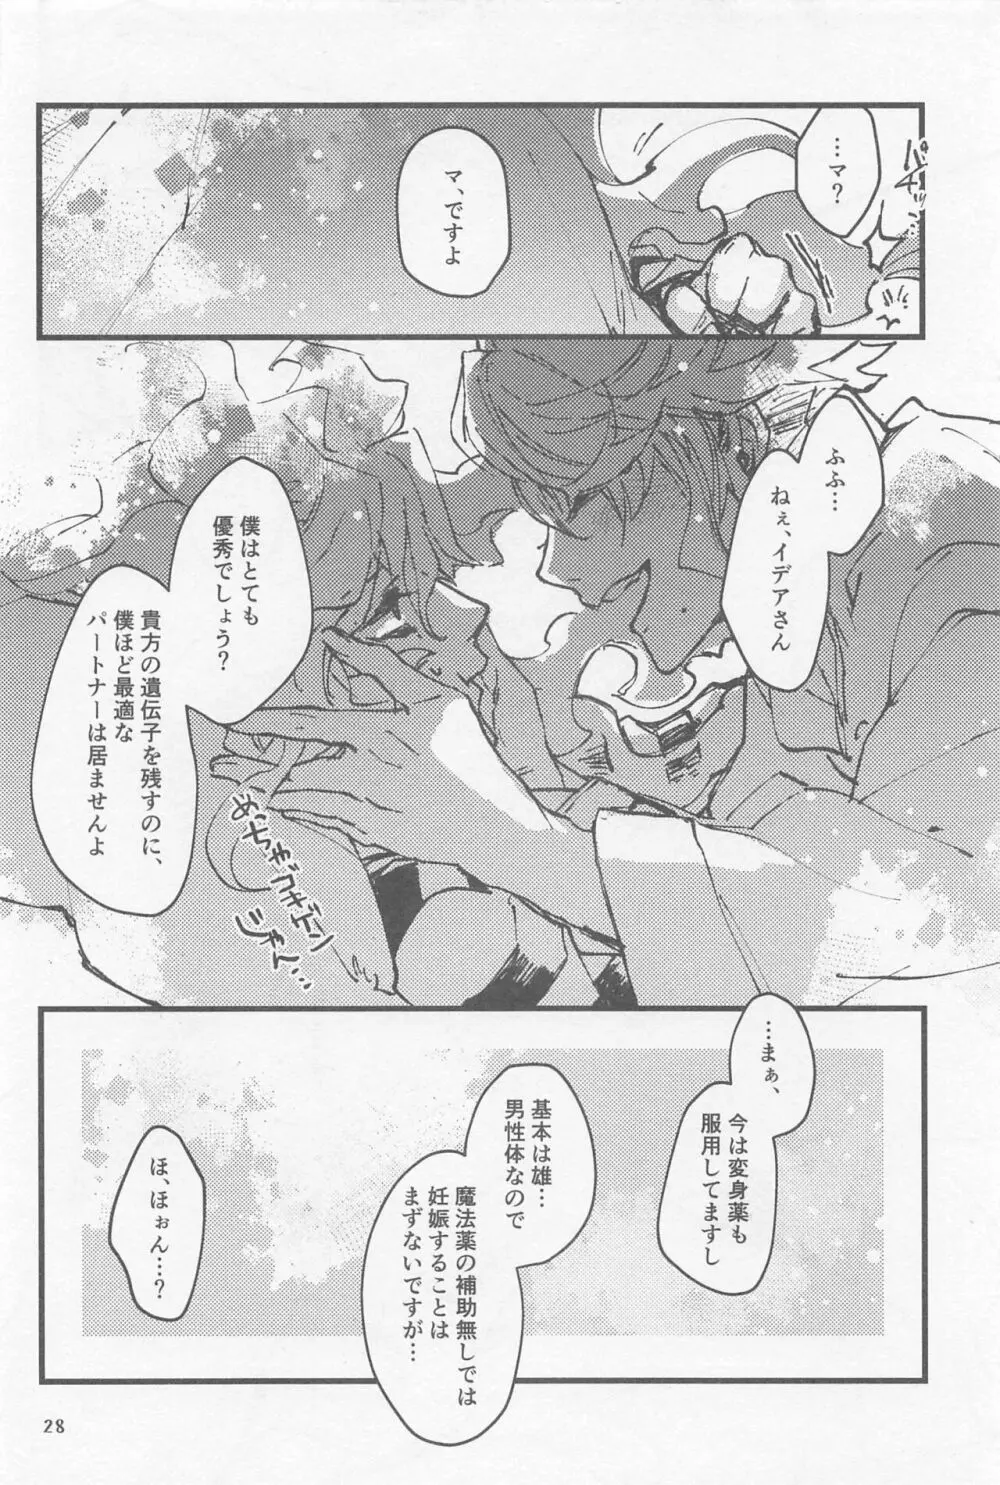 シンソウ夜話 #2 - page27